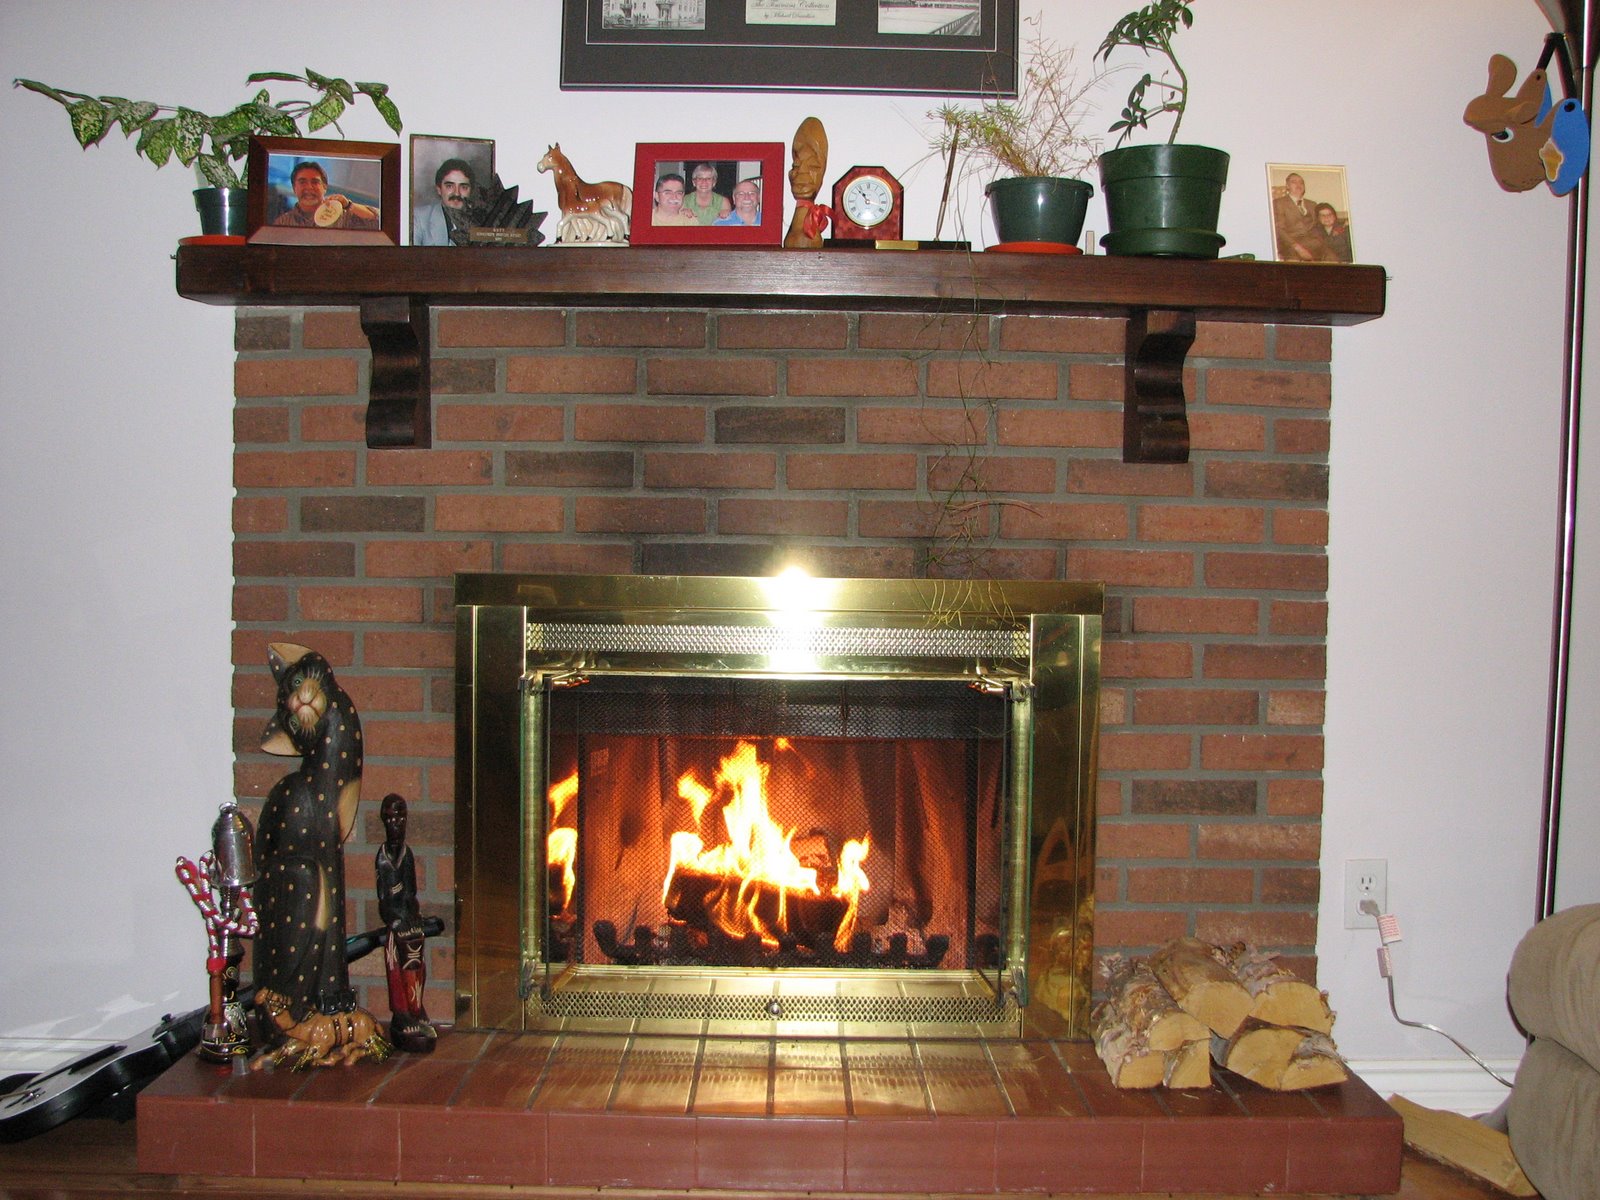 [My+first+fireplace+fire+002.JPG]